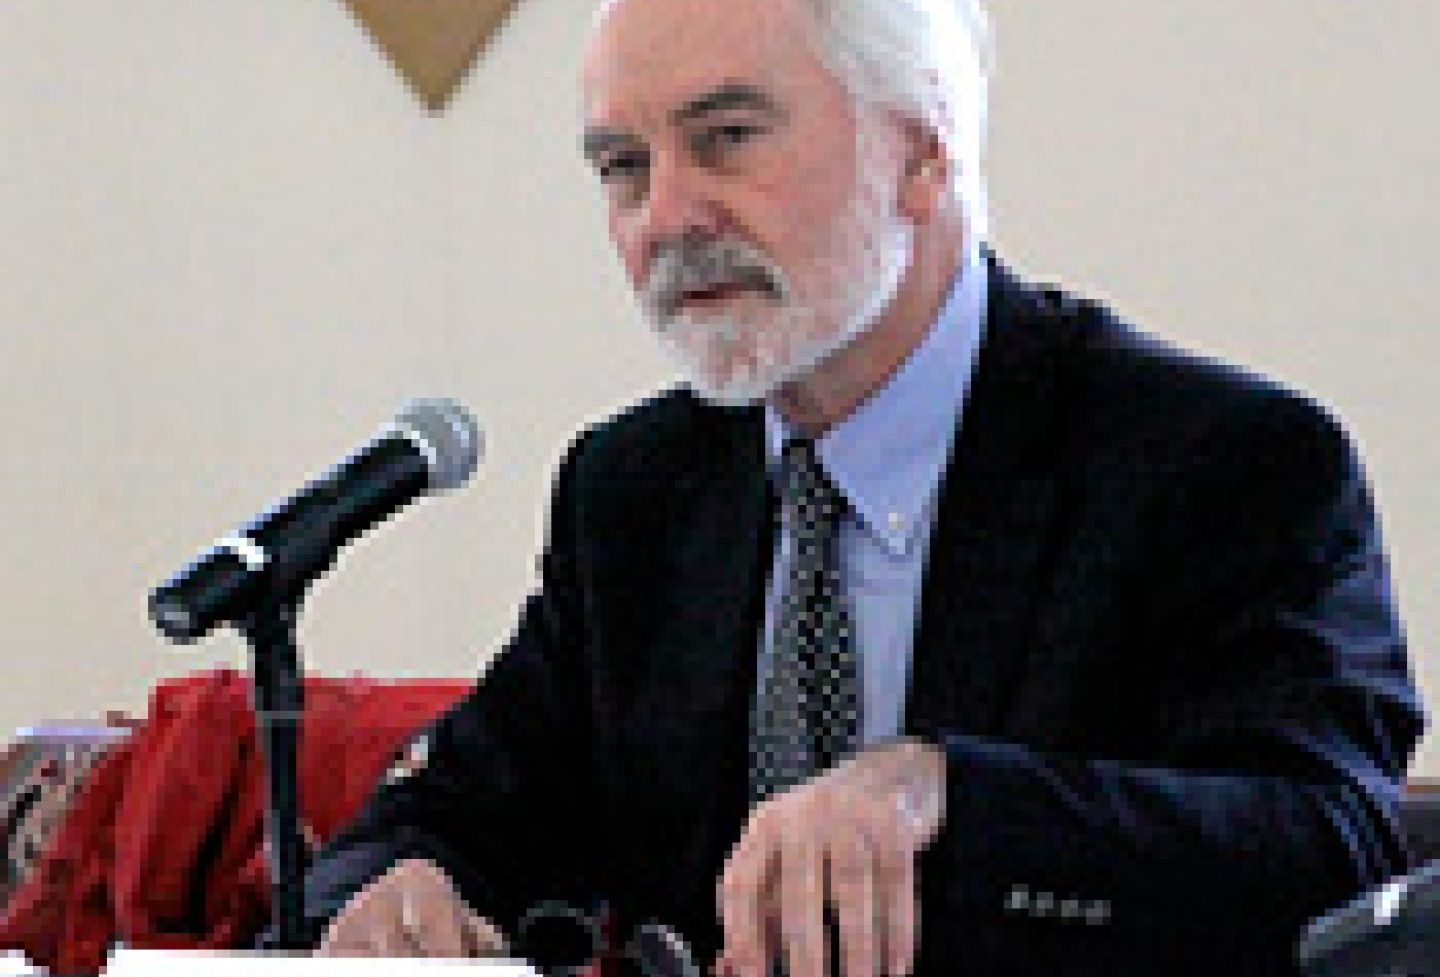 Denis Galligan